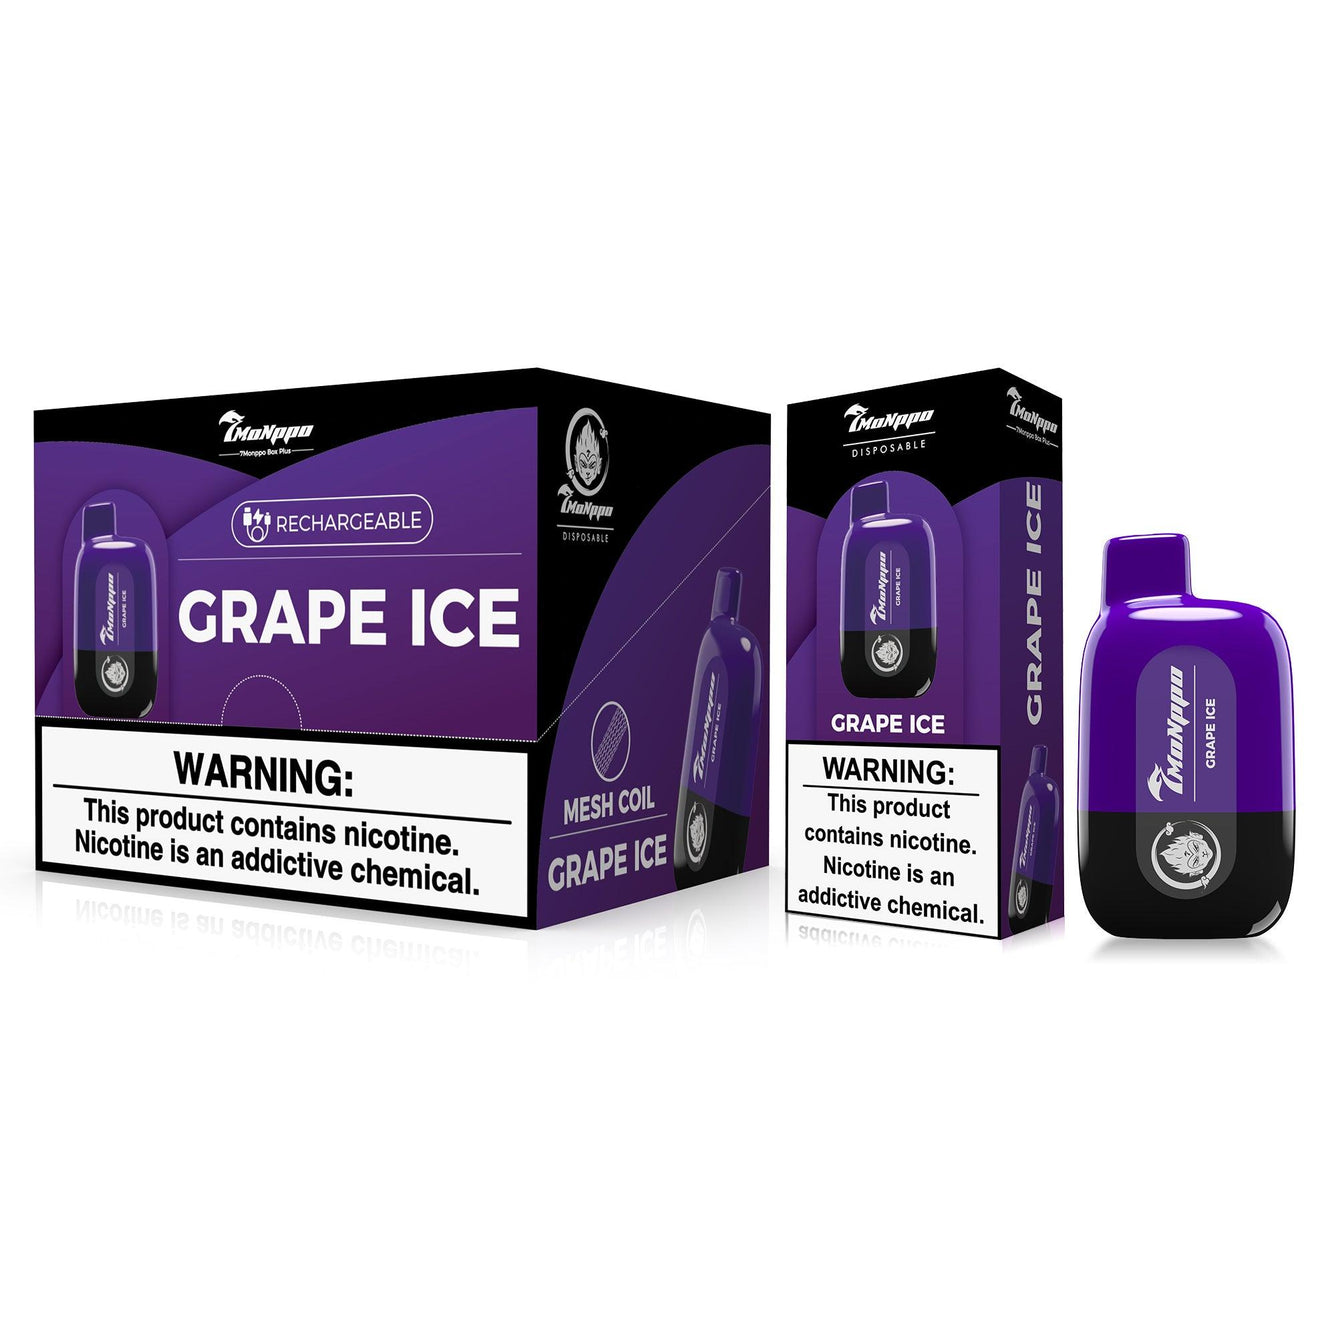 7VAPE disposable vape,  grape ice vape, grape vape, grape energy vape,  5000 puffs, 5% nicotine, 7-VAPE BAR PLUS， 7MONPPO BAR, 7MONPPO DISPOSABLE VAPE, 7MONPPO BOX, 7MONPPO BOX PLUS, 5% nicotine, rechargeable disposable vape, rechargeable vape, mesh coil